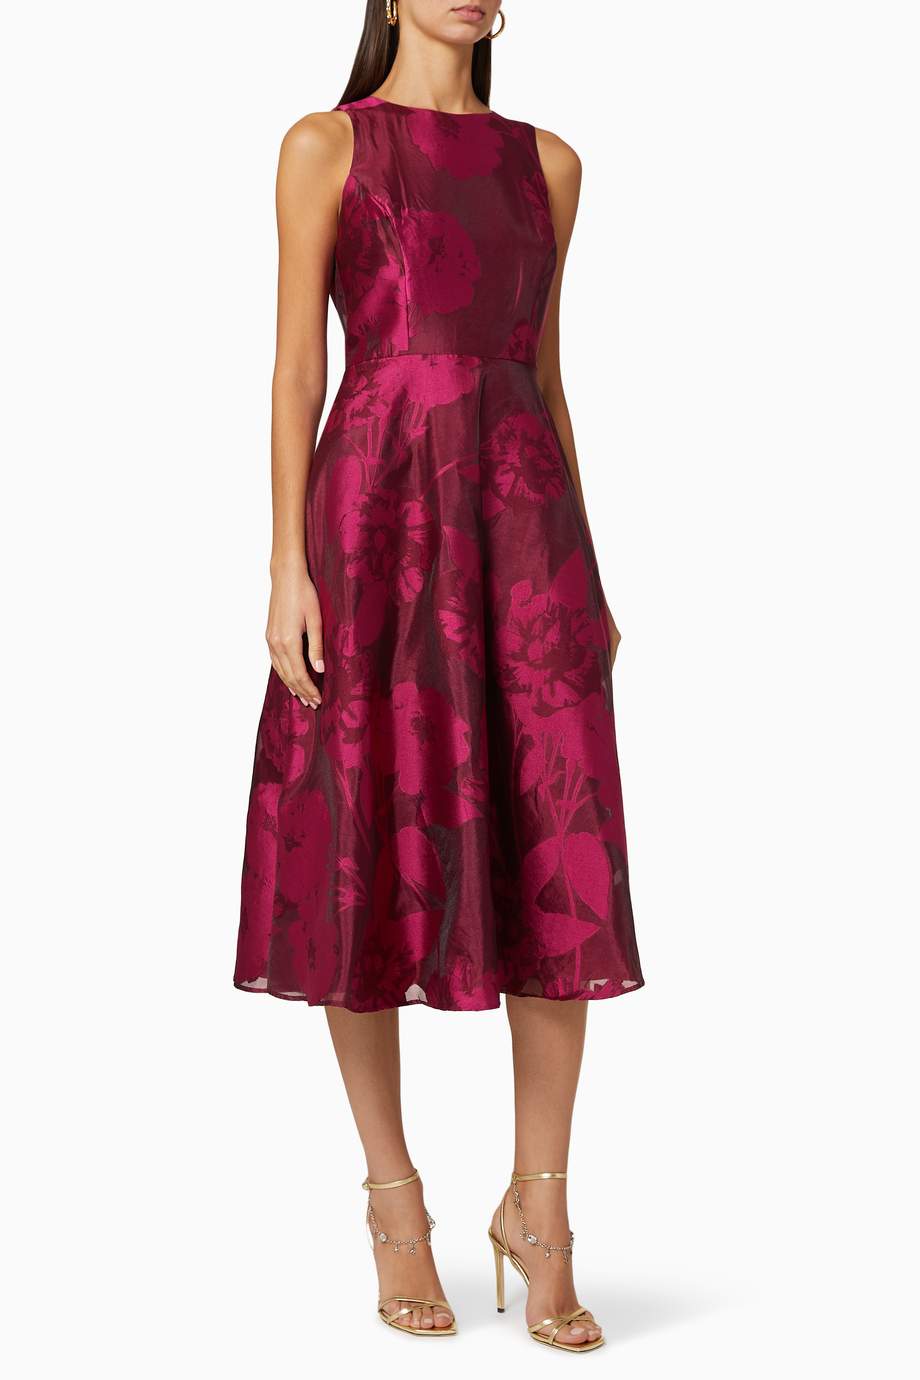 تسوق فستان وايلي متوسط الطول بنقشة زهور ted baker وردي للنساء ا ناس السعودية